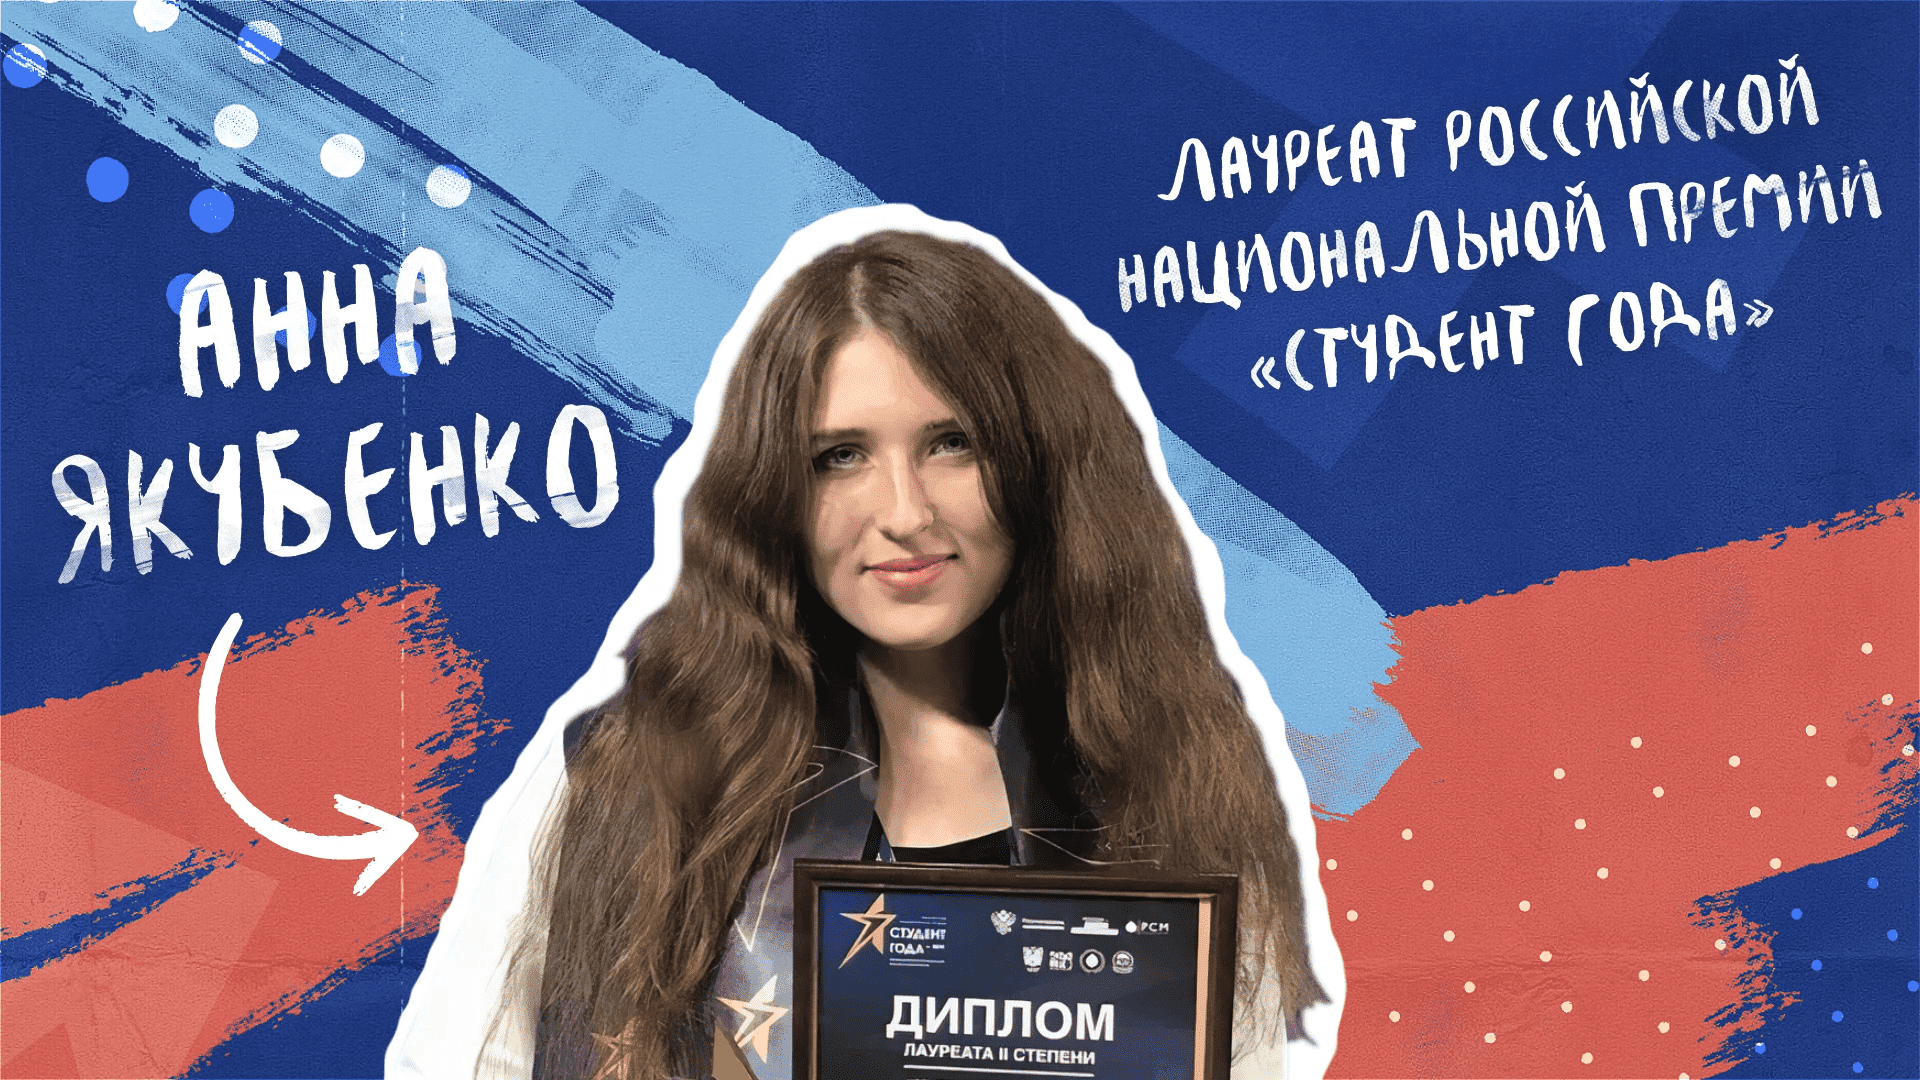 Как стать «Студентом года»? | История успеха Анны Якубенко